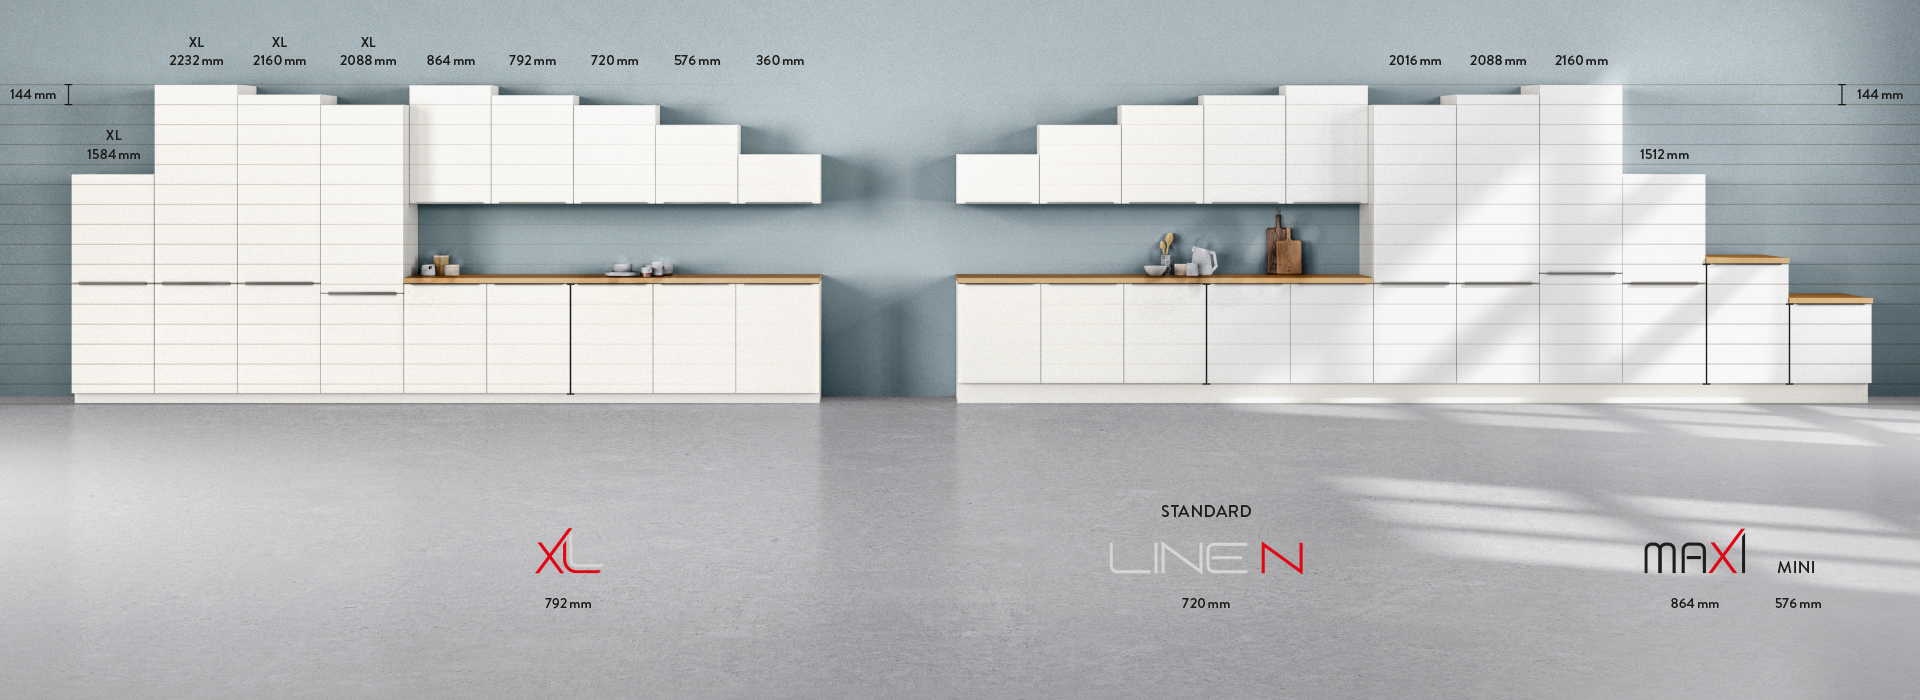 Moderní kuchyňský interiér předvádějící minimalistické bílé skříňky s důrazem na efektivitu prostoru a současnou designovou estetiku.